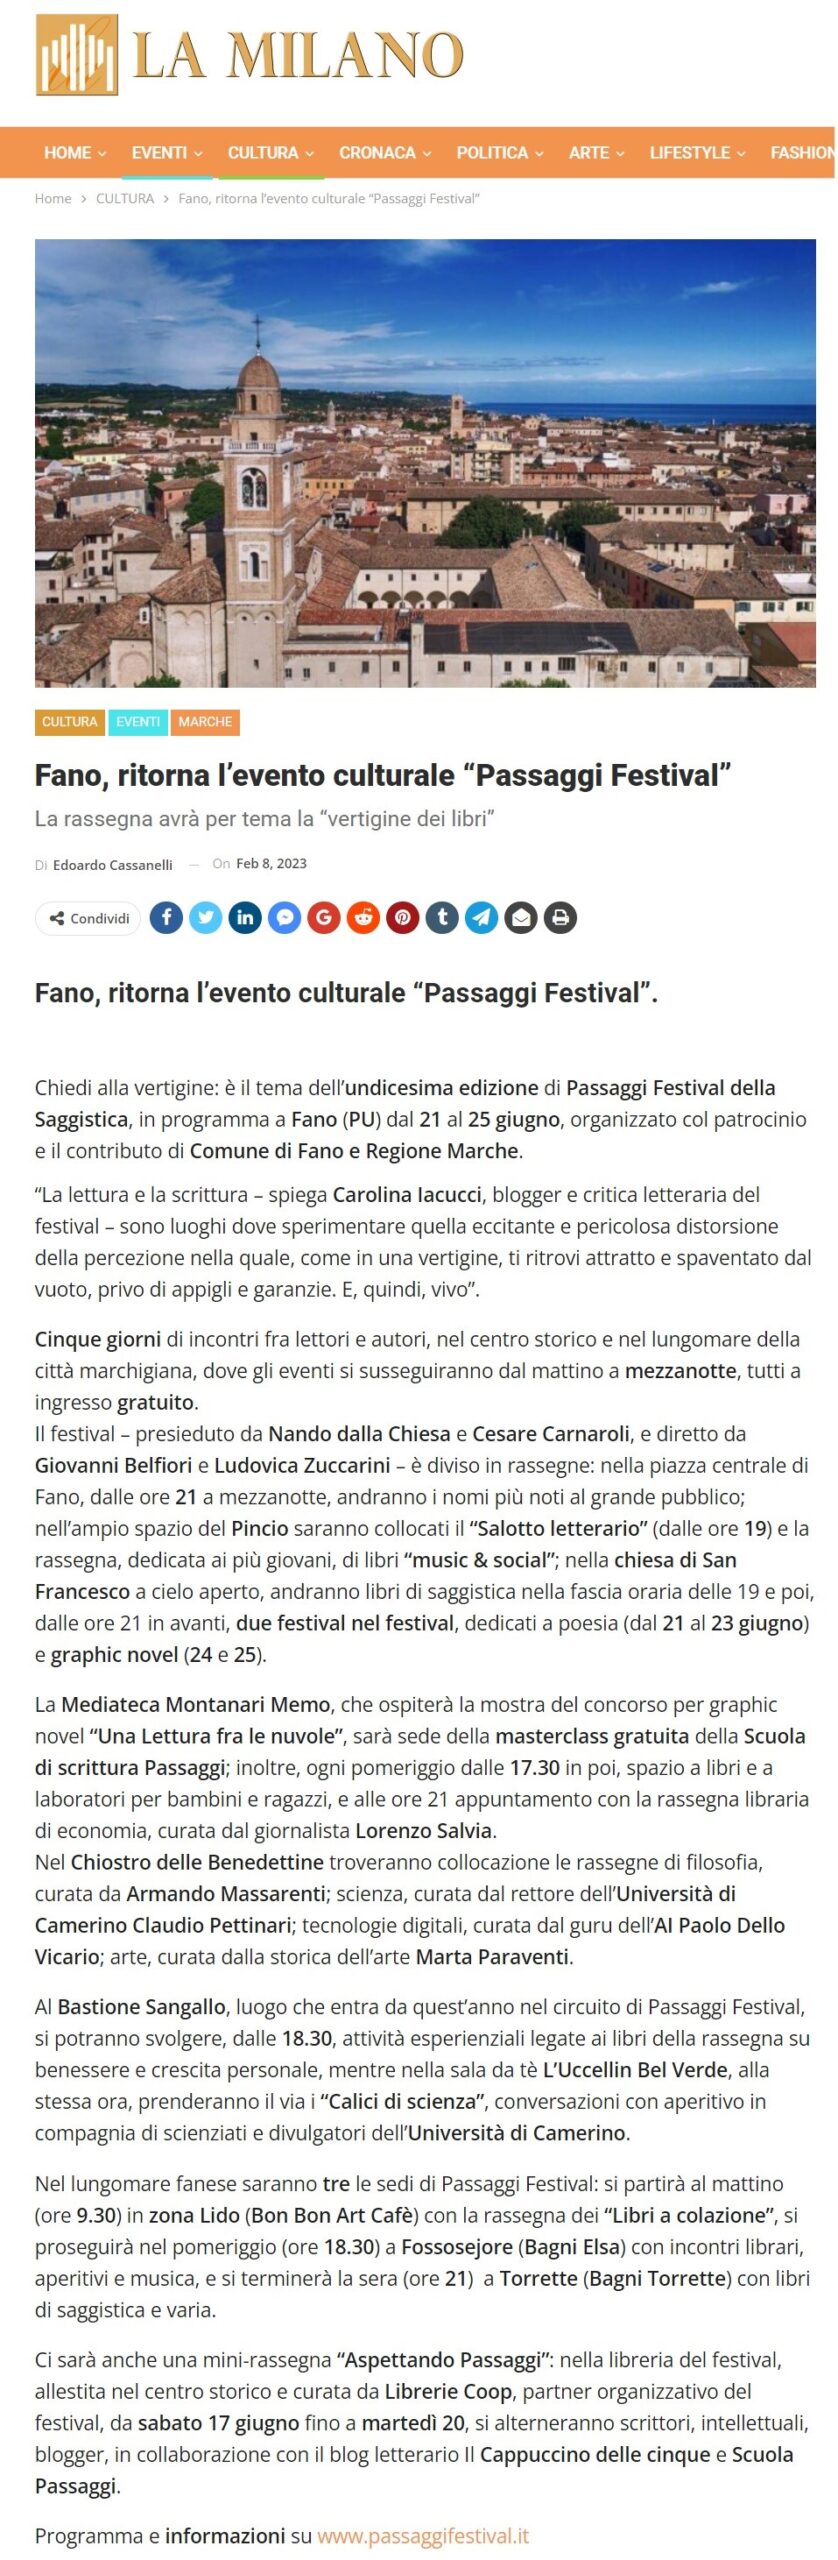 Fano_ritorna_l_evento_culturale_Passaggi_Festival_La_rassegna_avra_per_tema_la_vertigine_dei_libri